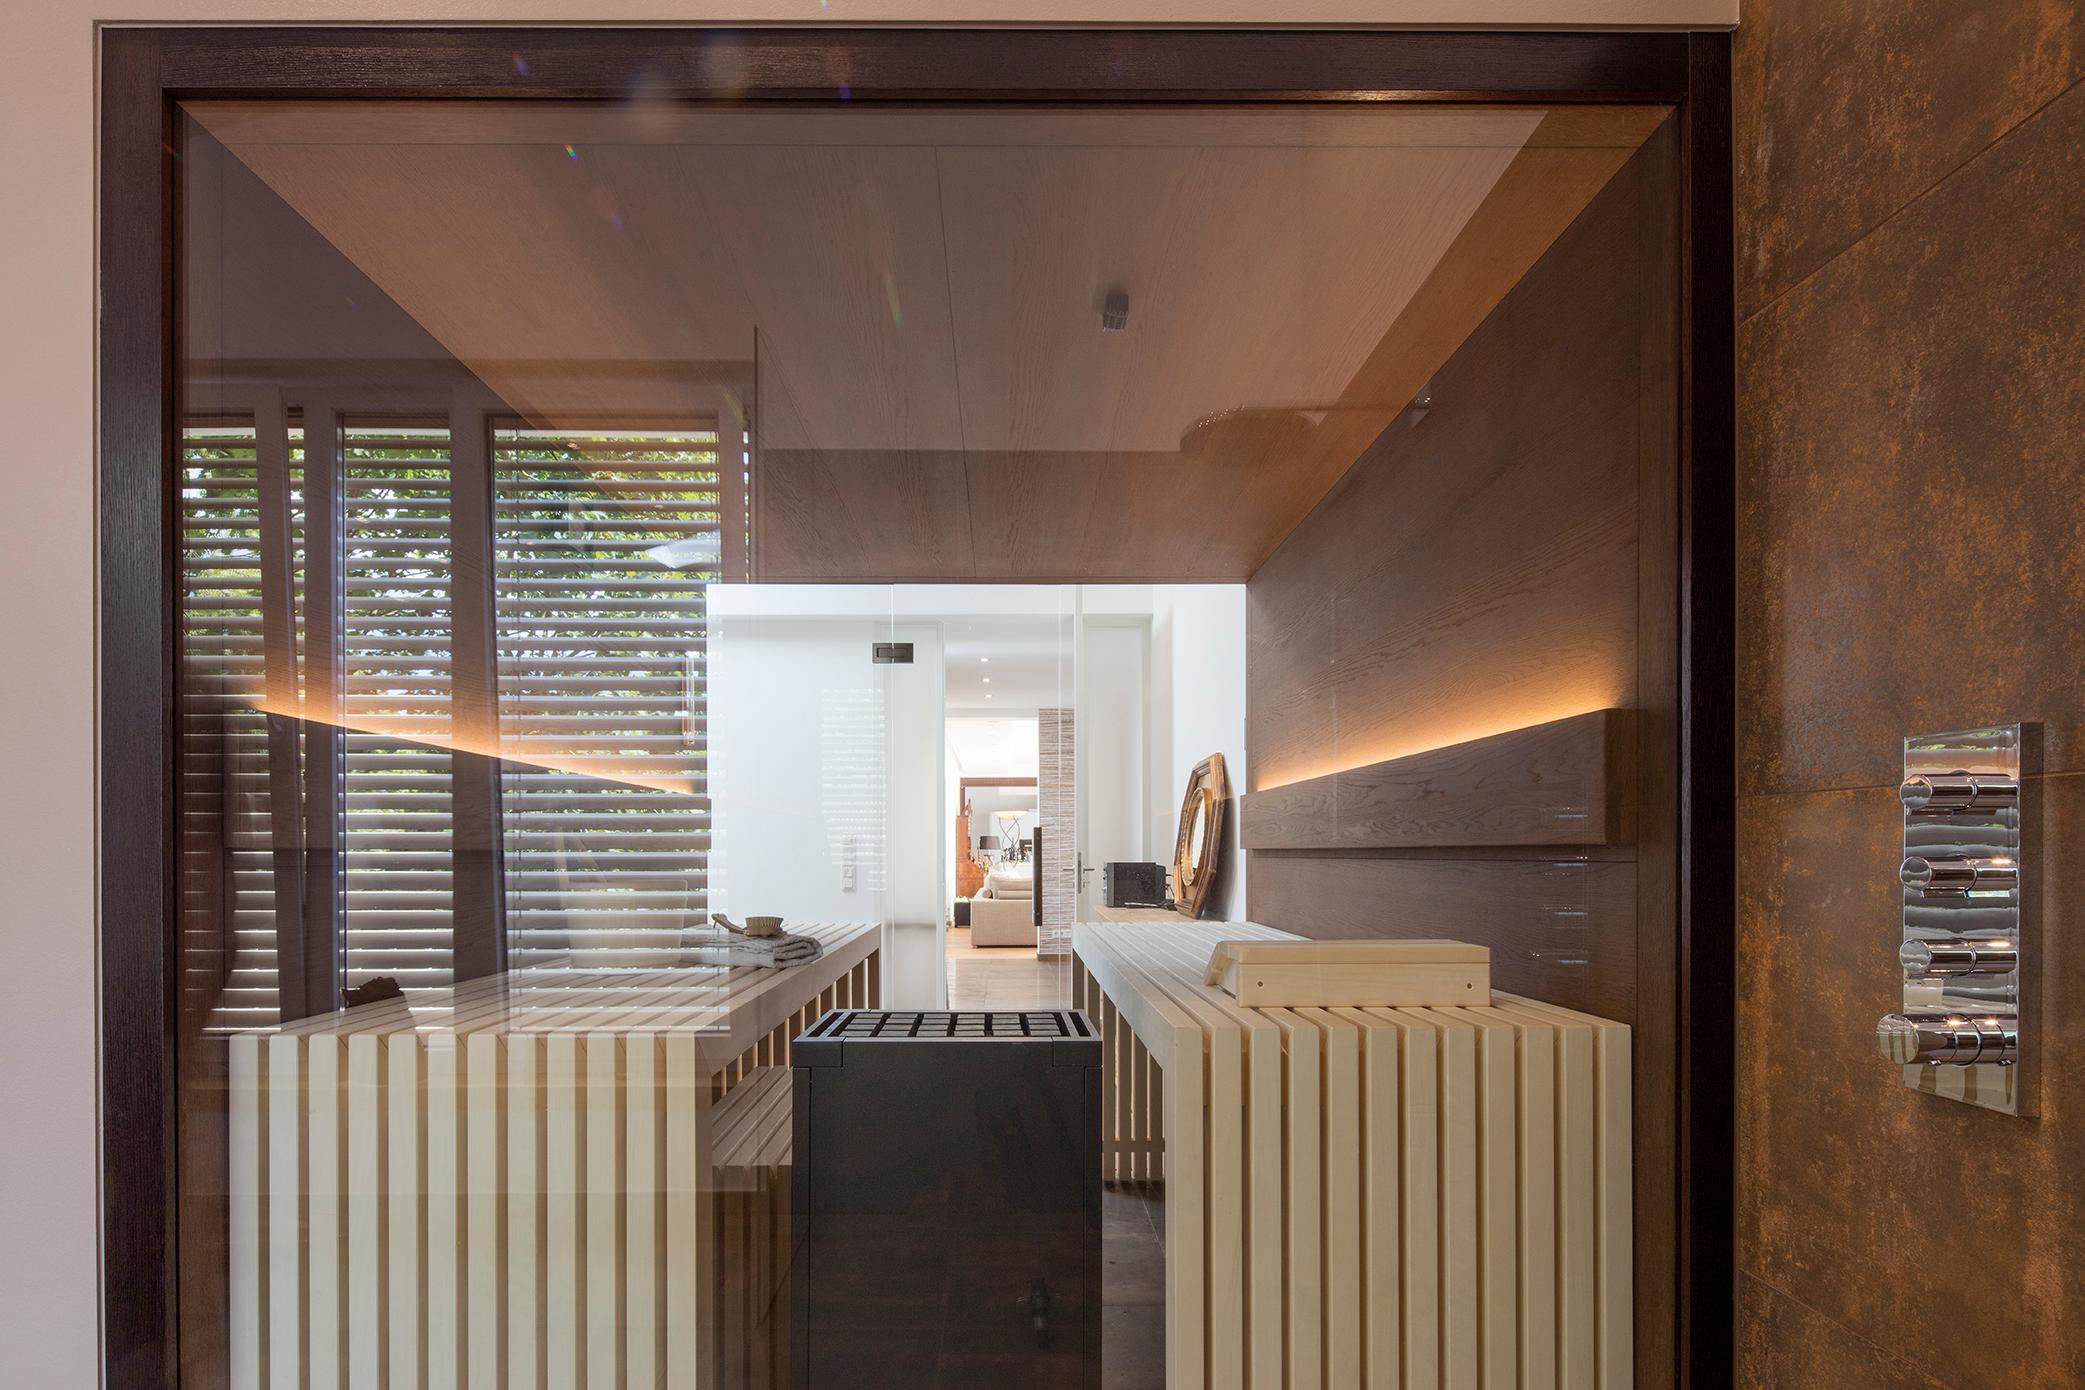 Design-Sauna mit frei stehenden Liegen im wohnlich-modernen Bad #badsauna ©Tom Bendix für corso sauna manufaktur